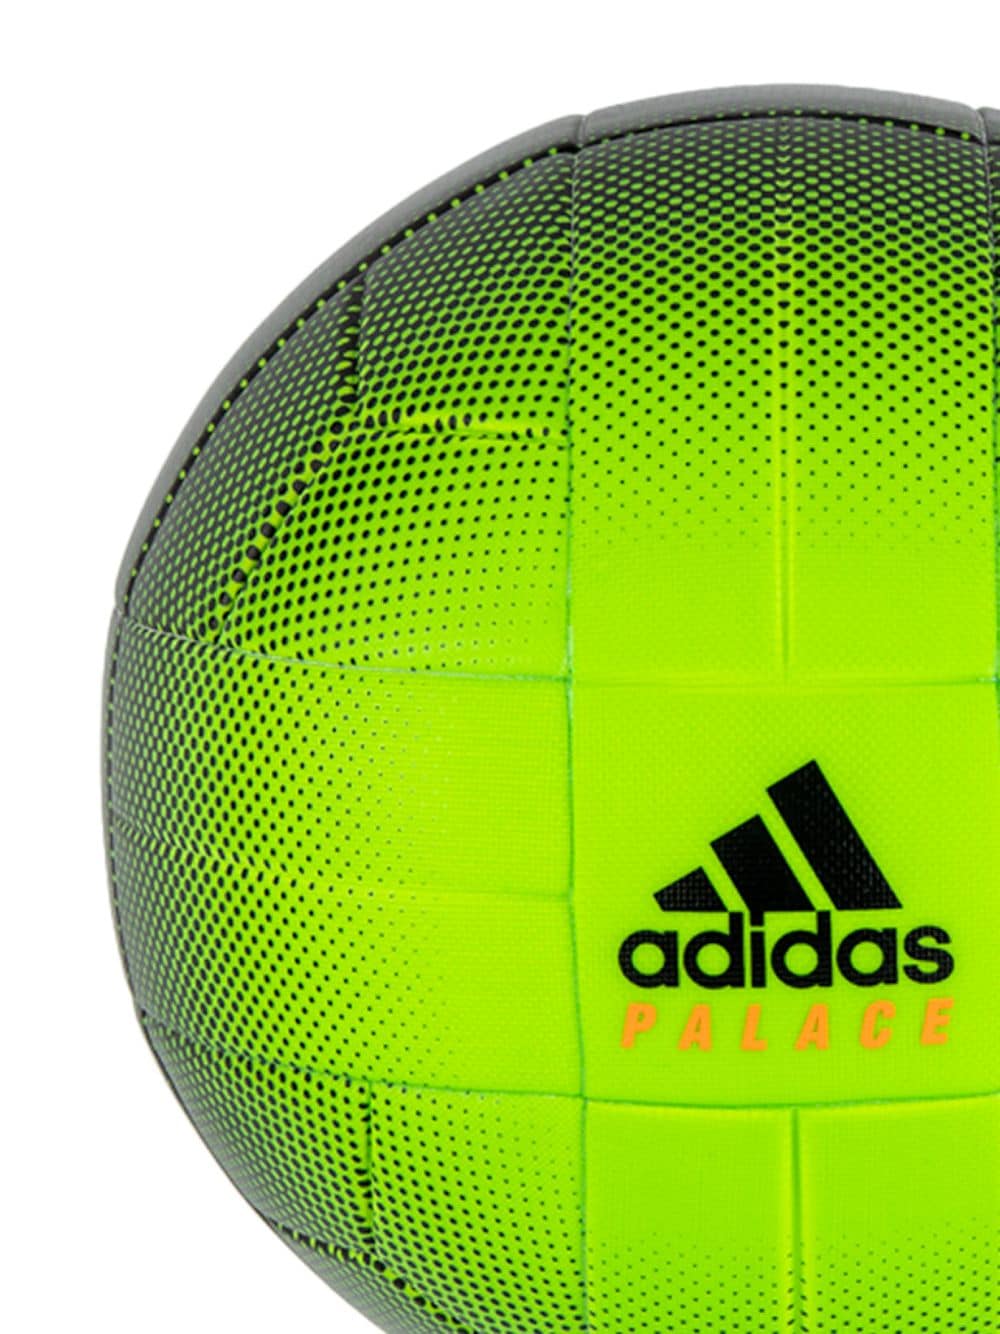 фото Palace футбольный мяч x juventus x adidas